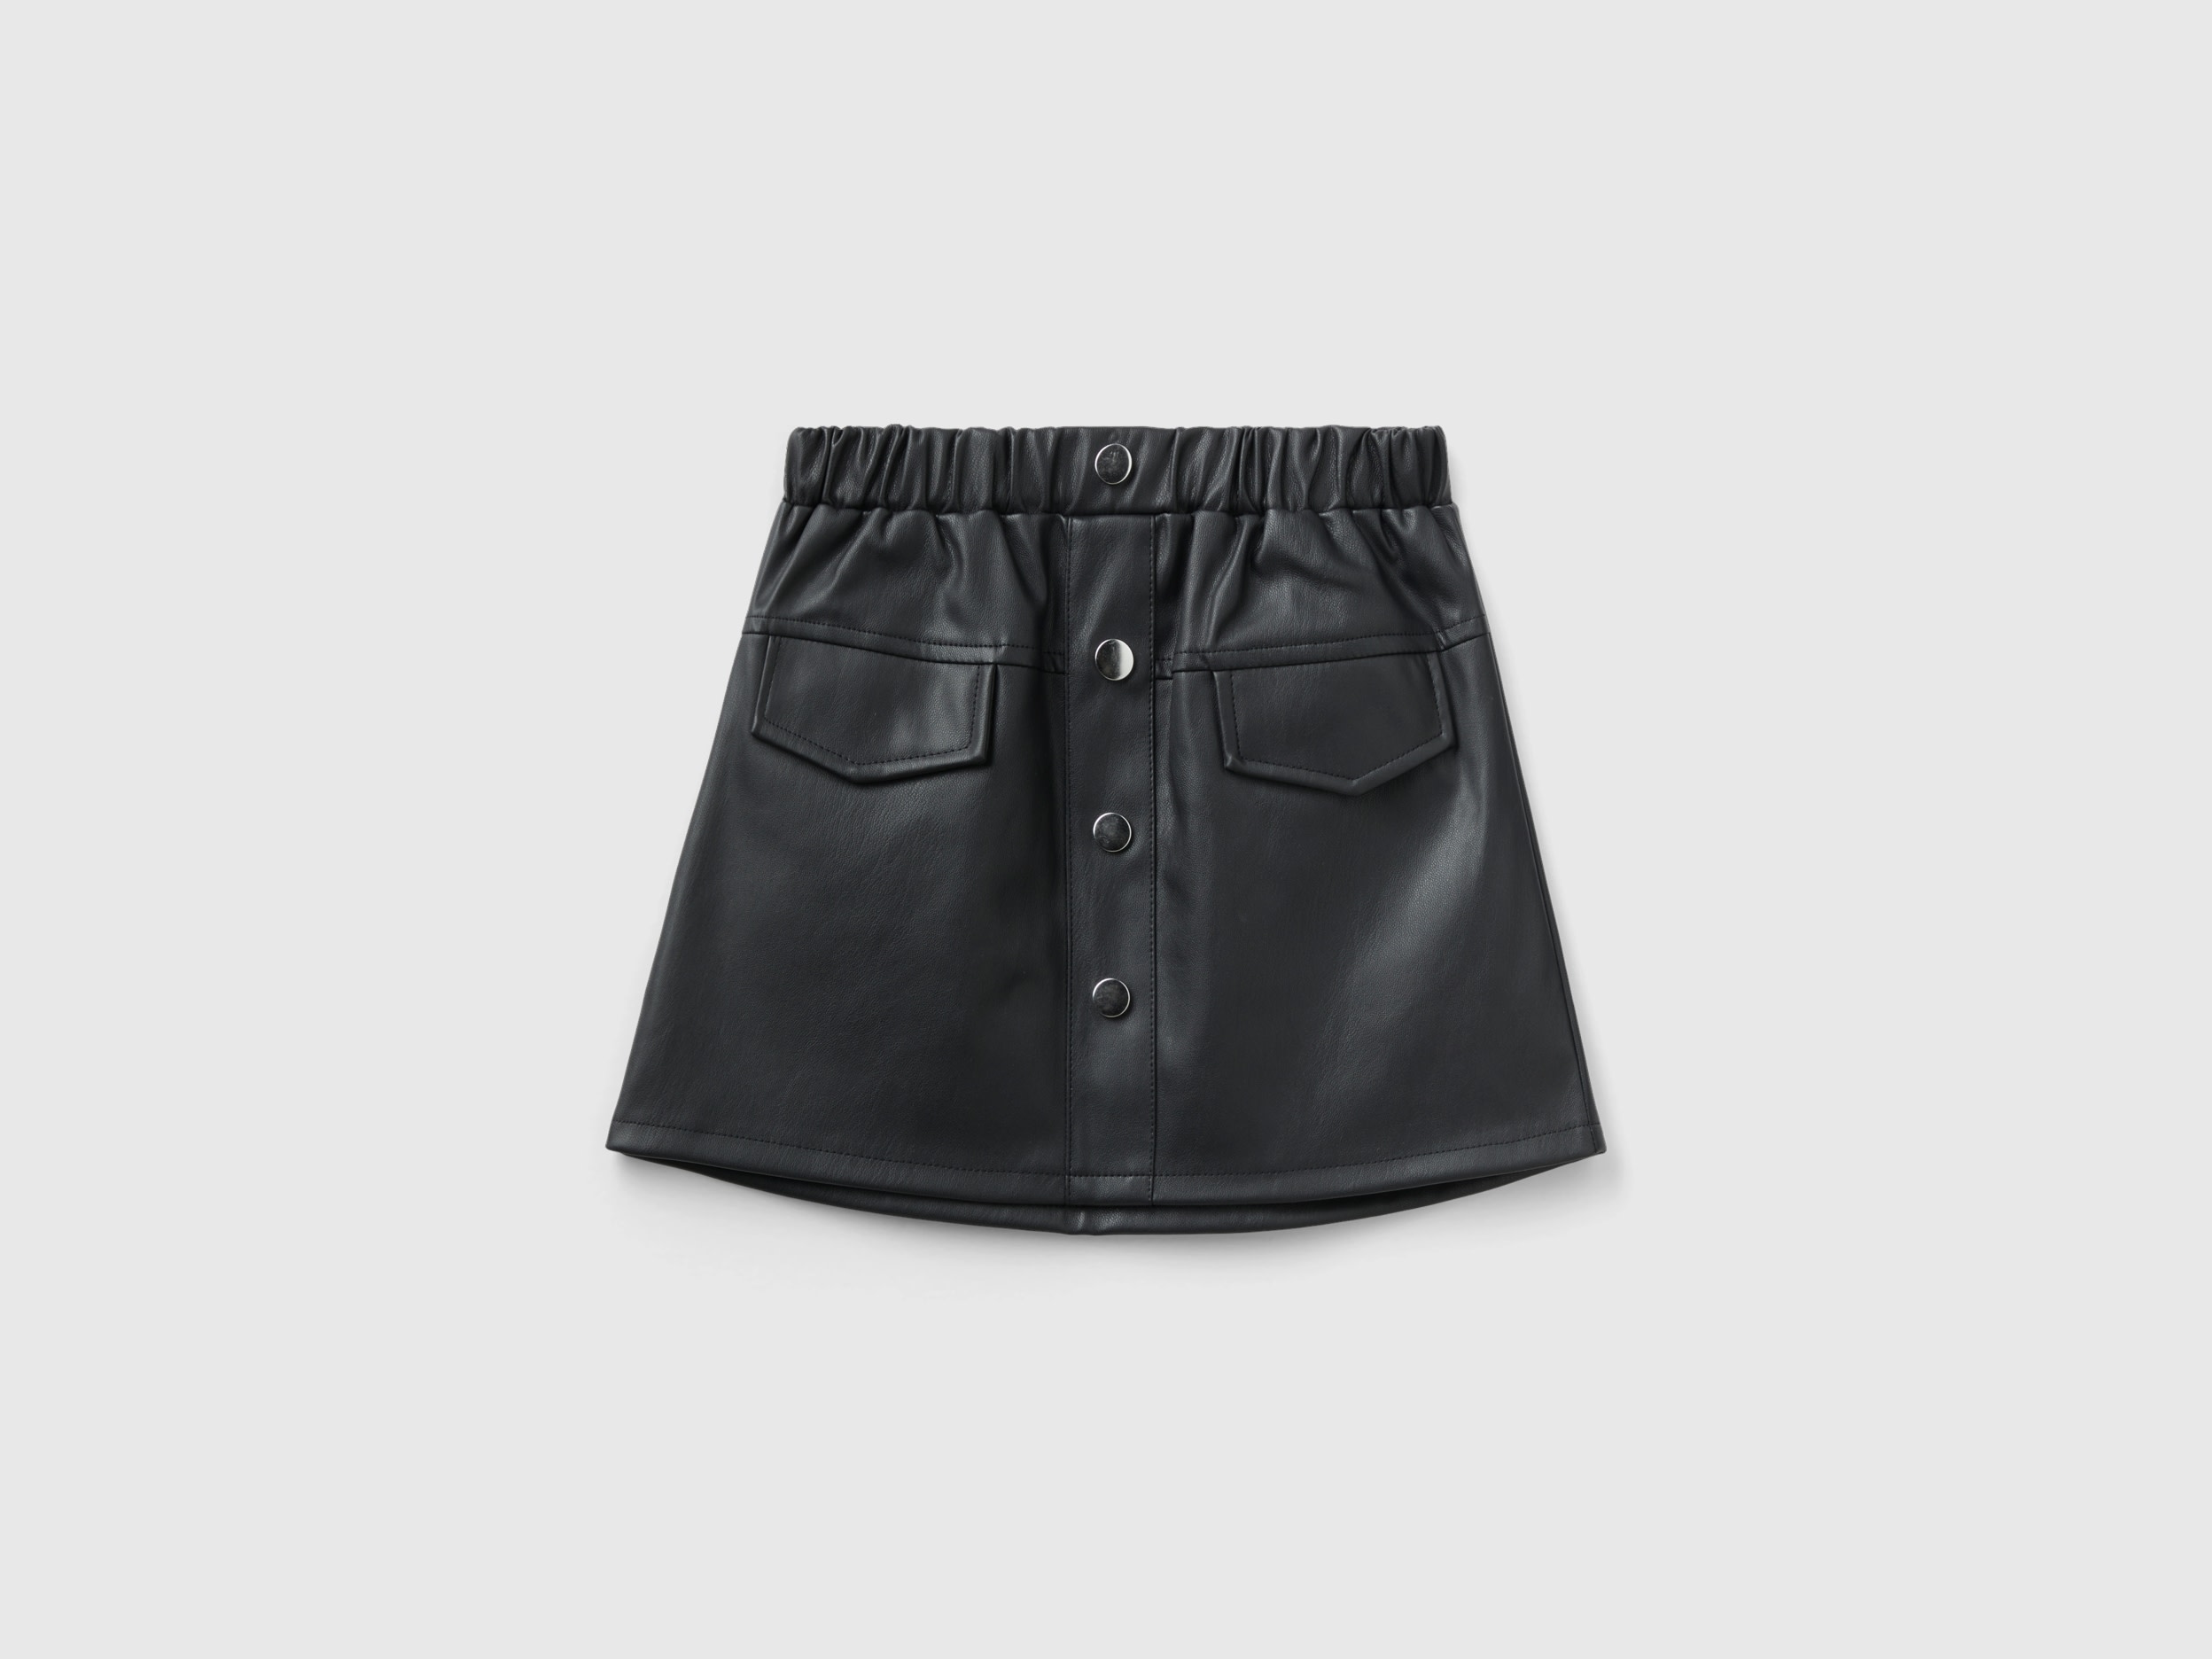 Benetton, Miniskirt In Imitation Leather, size 3-4, Black, Kids